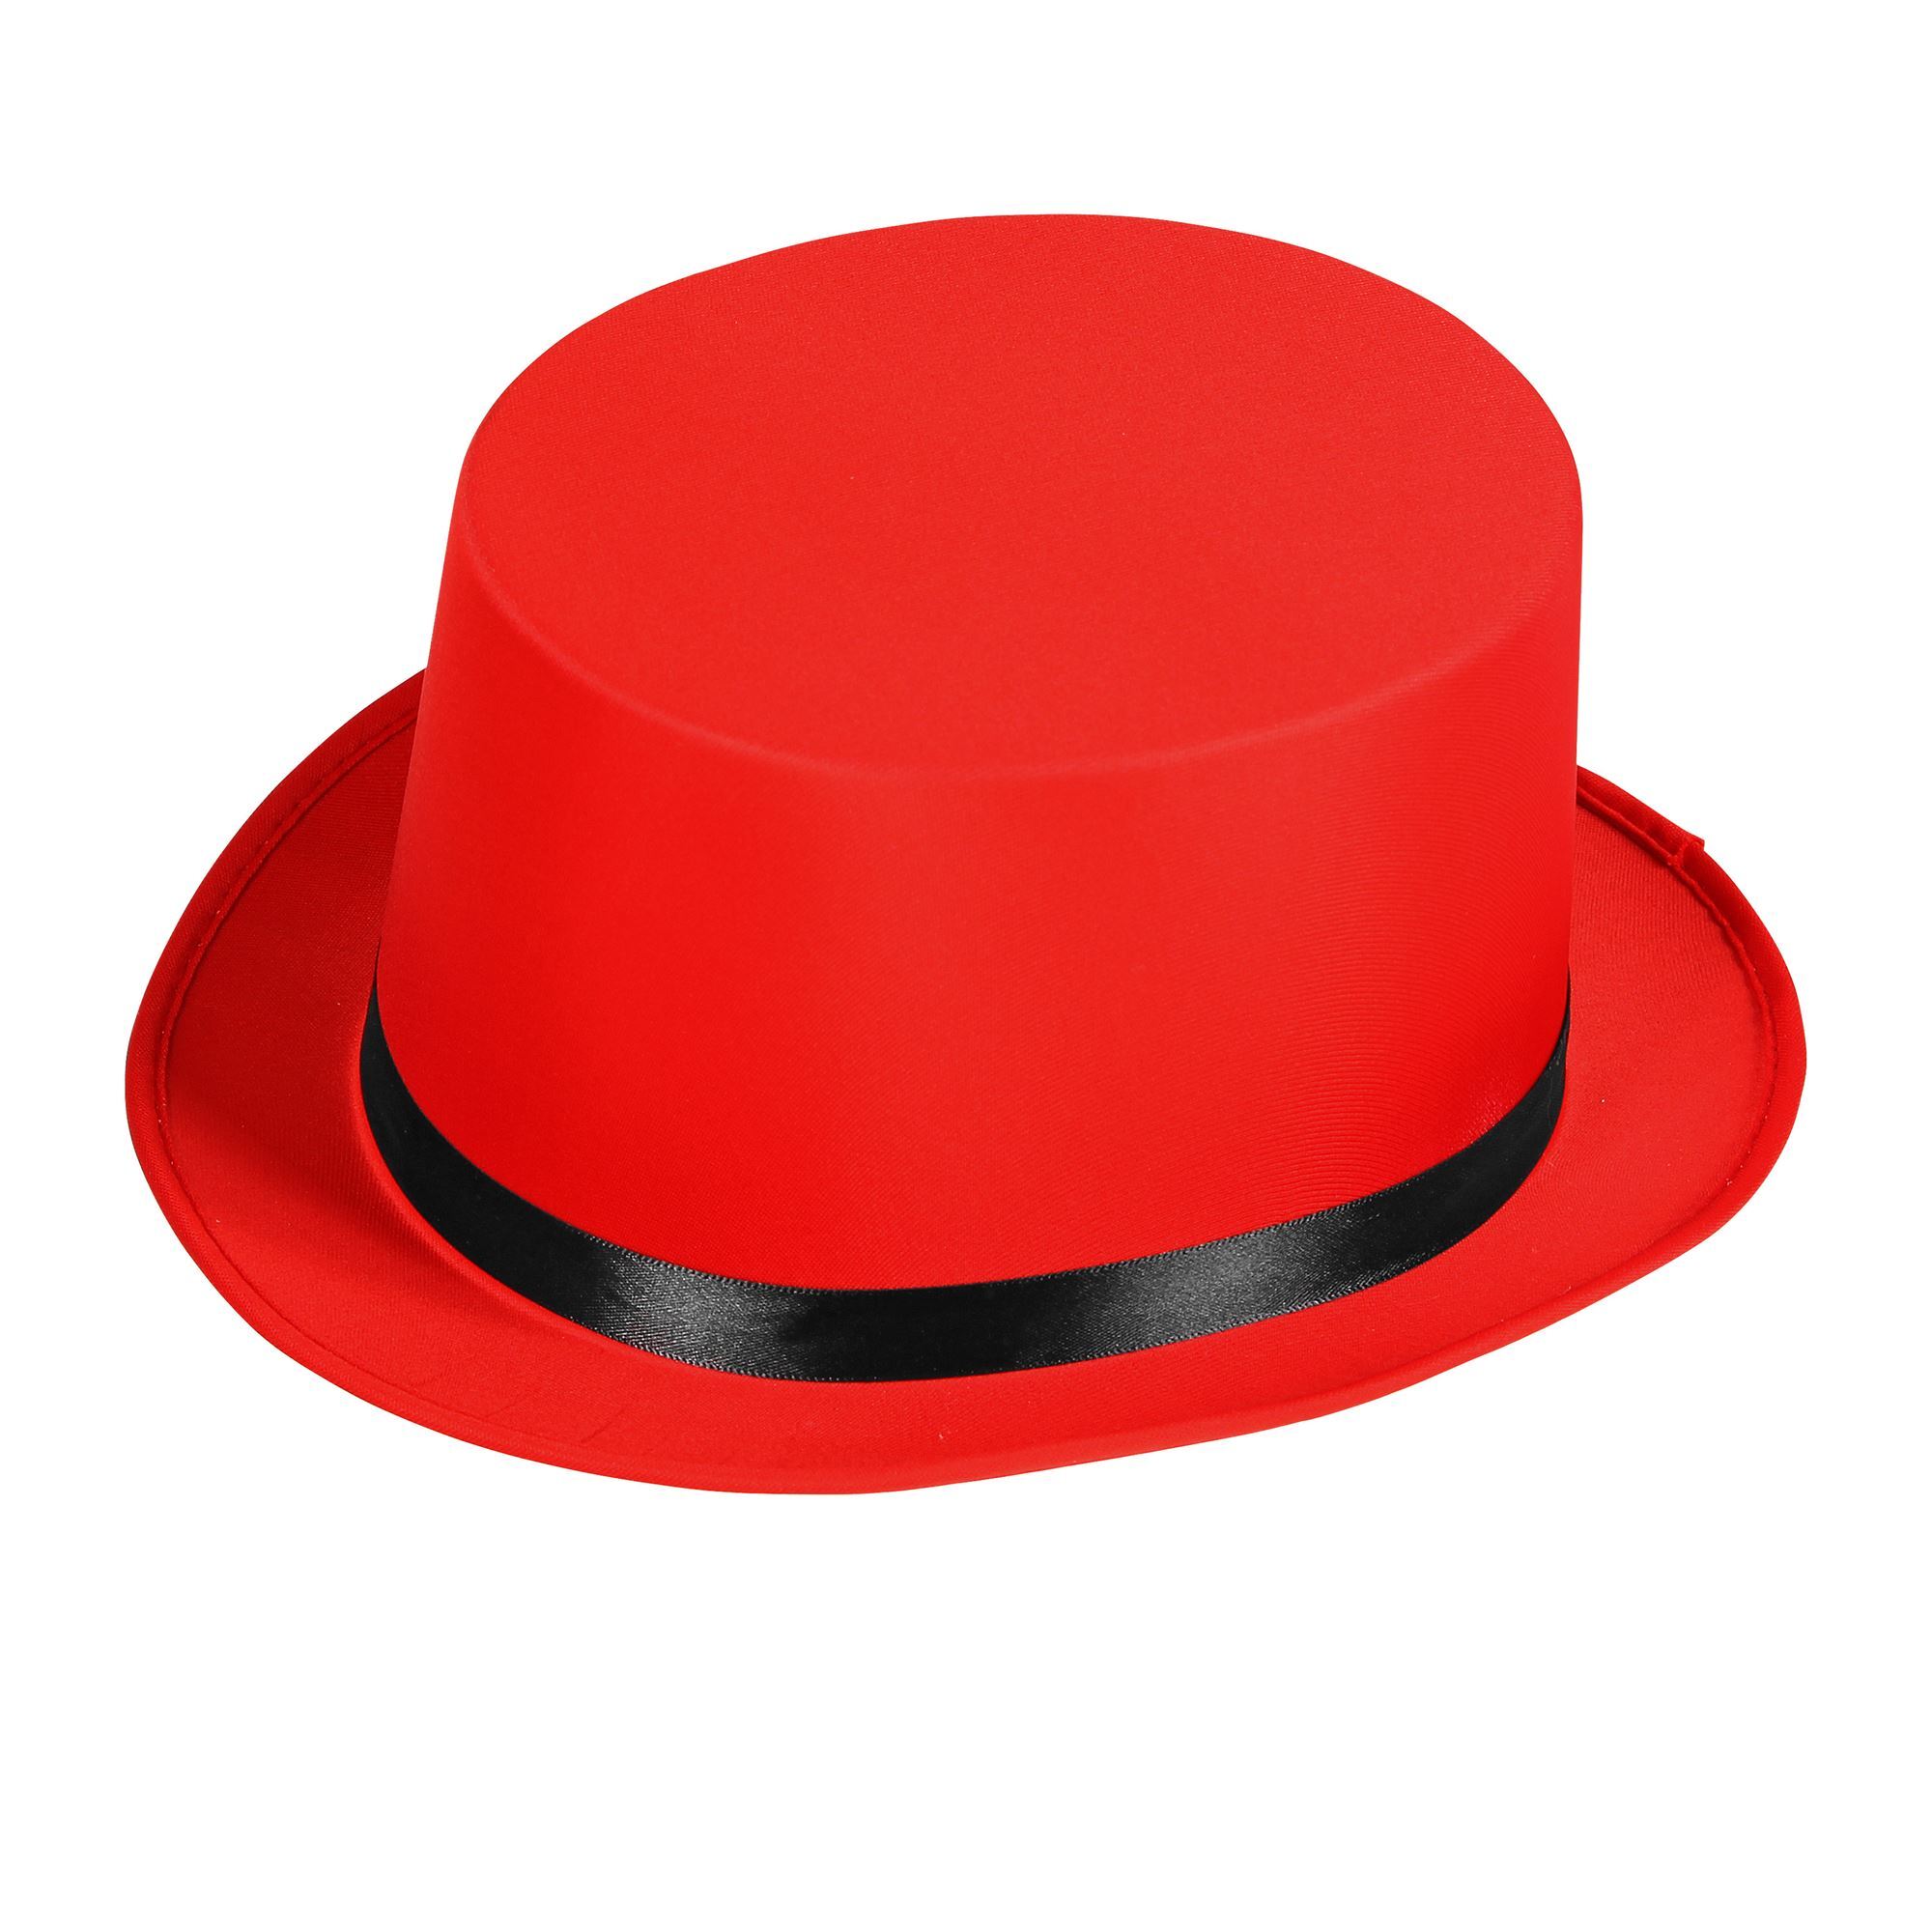 Hoge hoed in het rood met zwarte band circus directeur